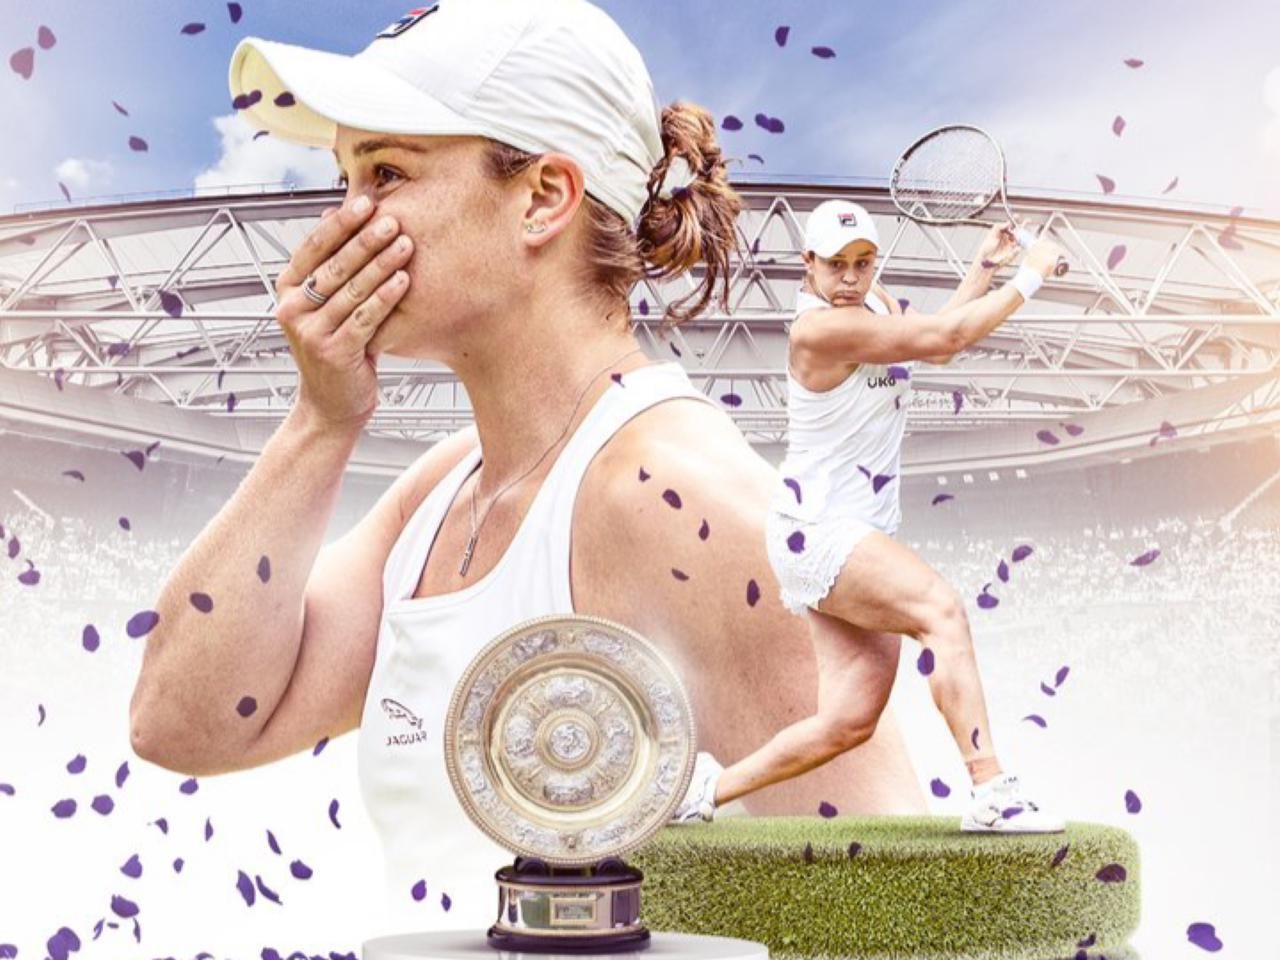 Petenis Australia, Asleigh Barty, juara Wimbledon 2021.